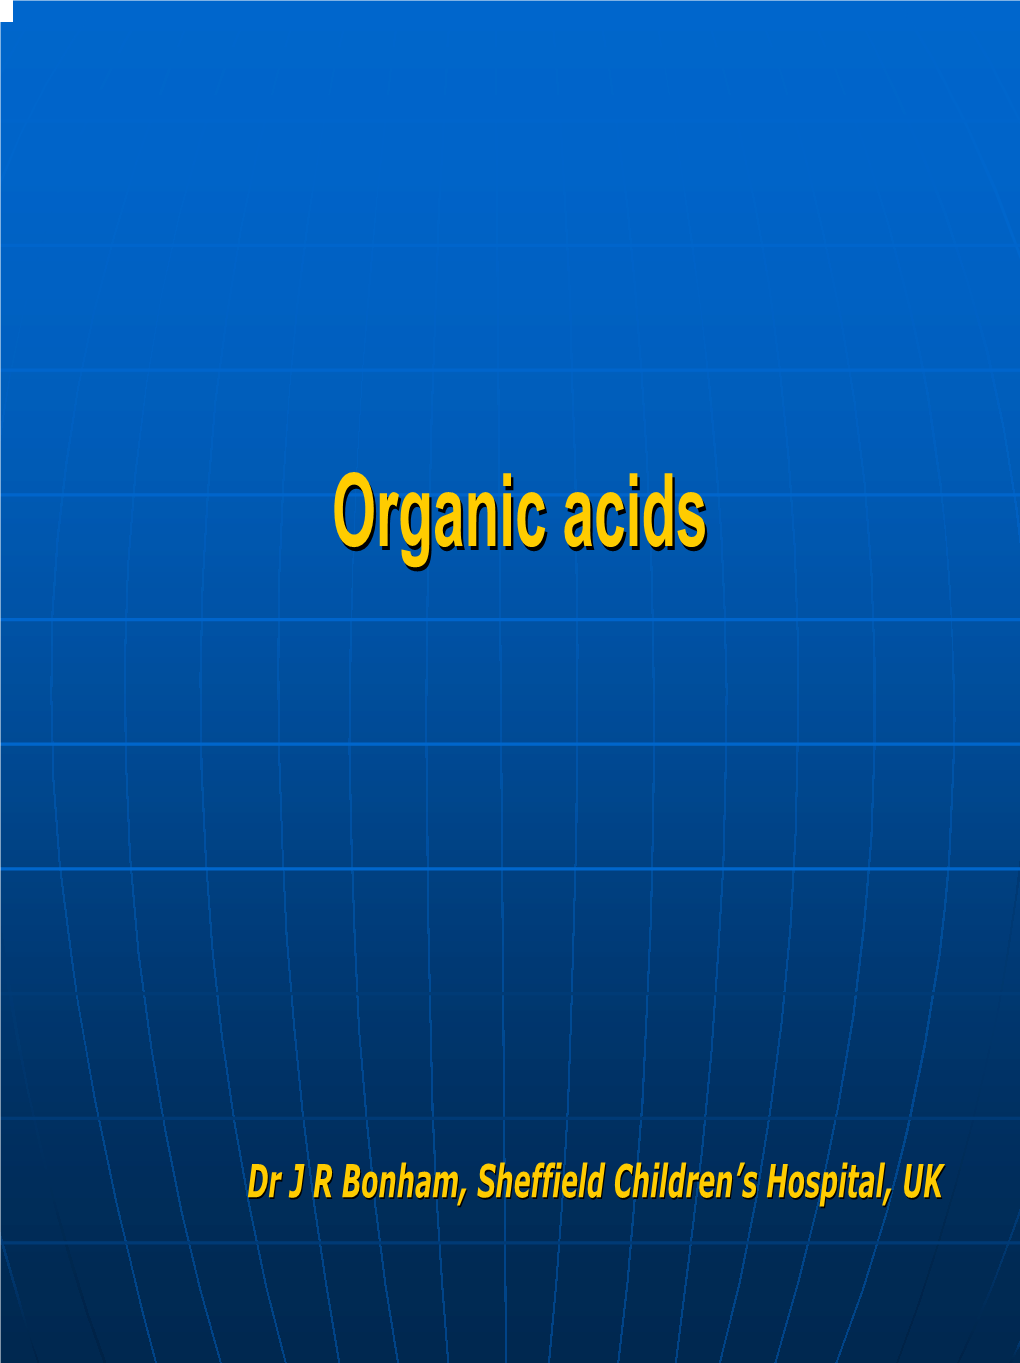 Organic Acidsacids